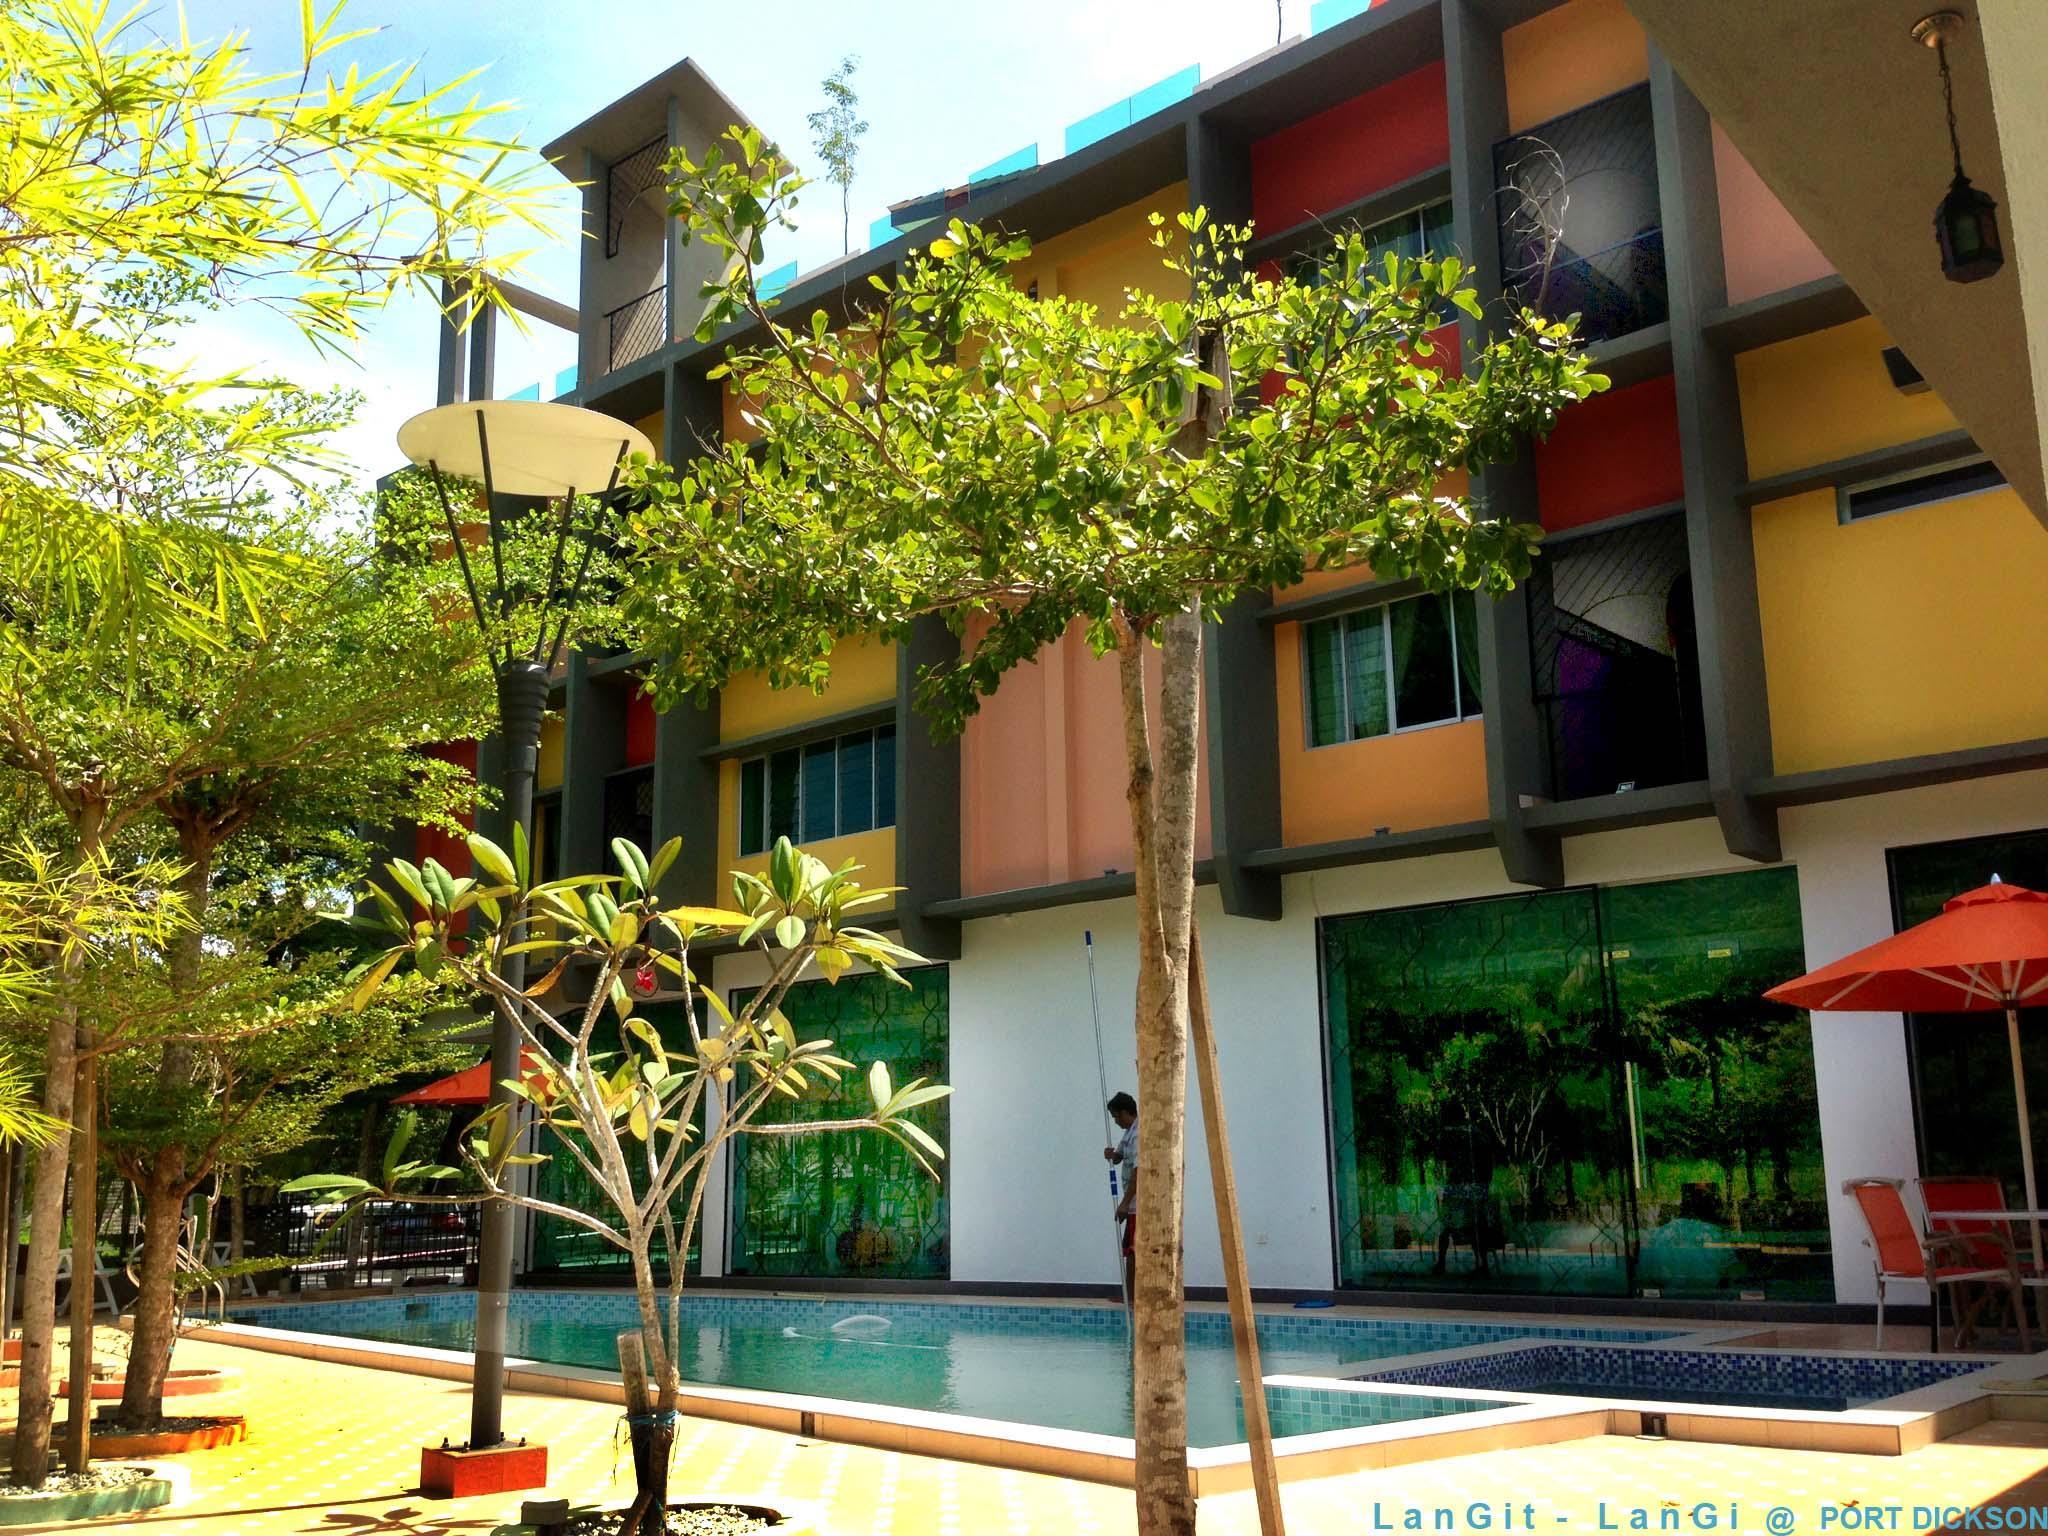 Langit Langi Hotel @ Port Dickson image 1